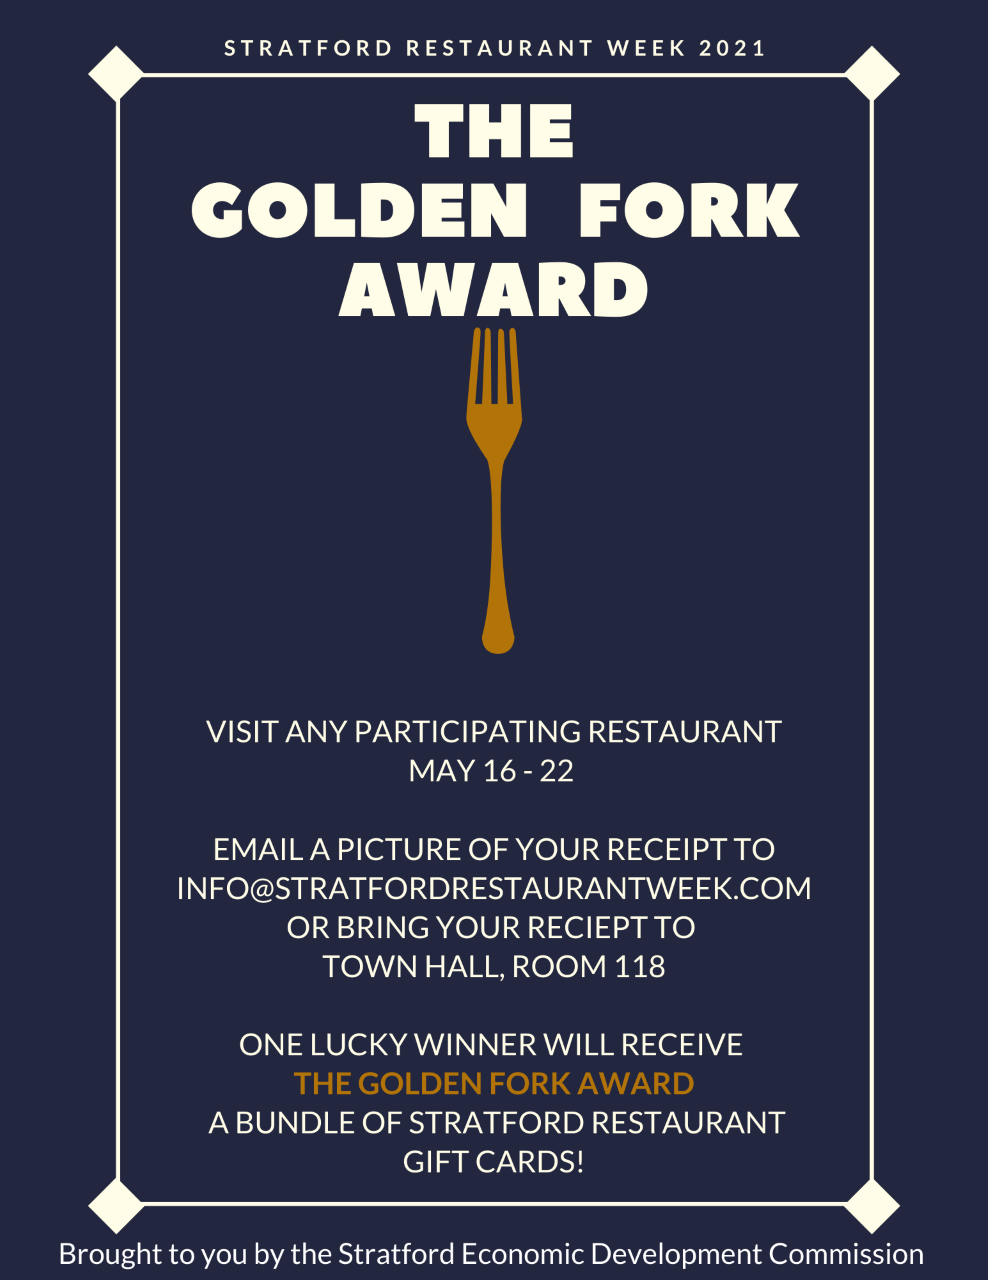 Forks Up 2021 Stratford Restaurant Week is ON!!! Stratford Crier